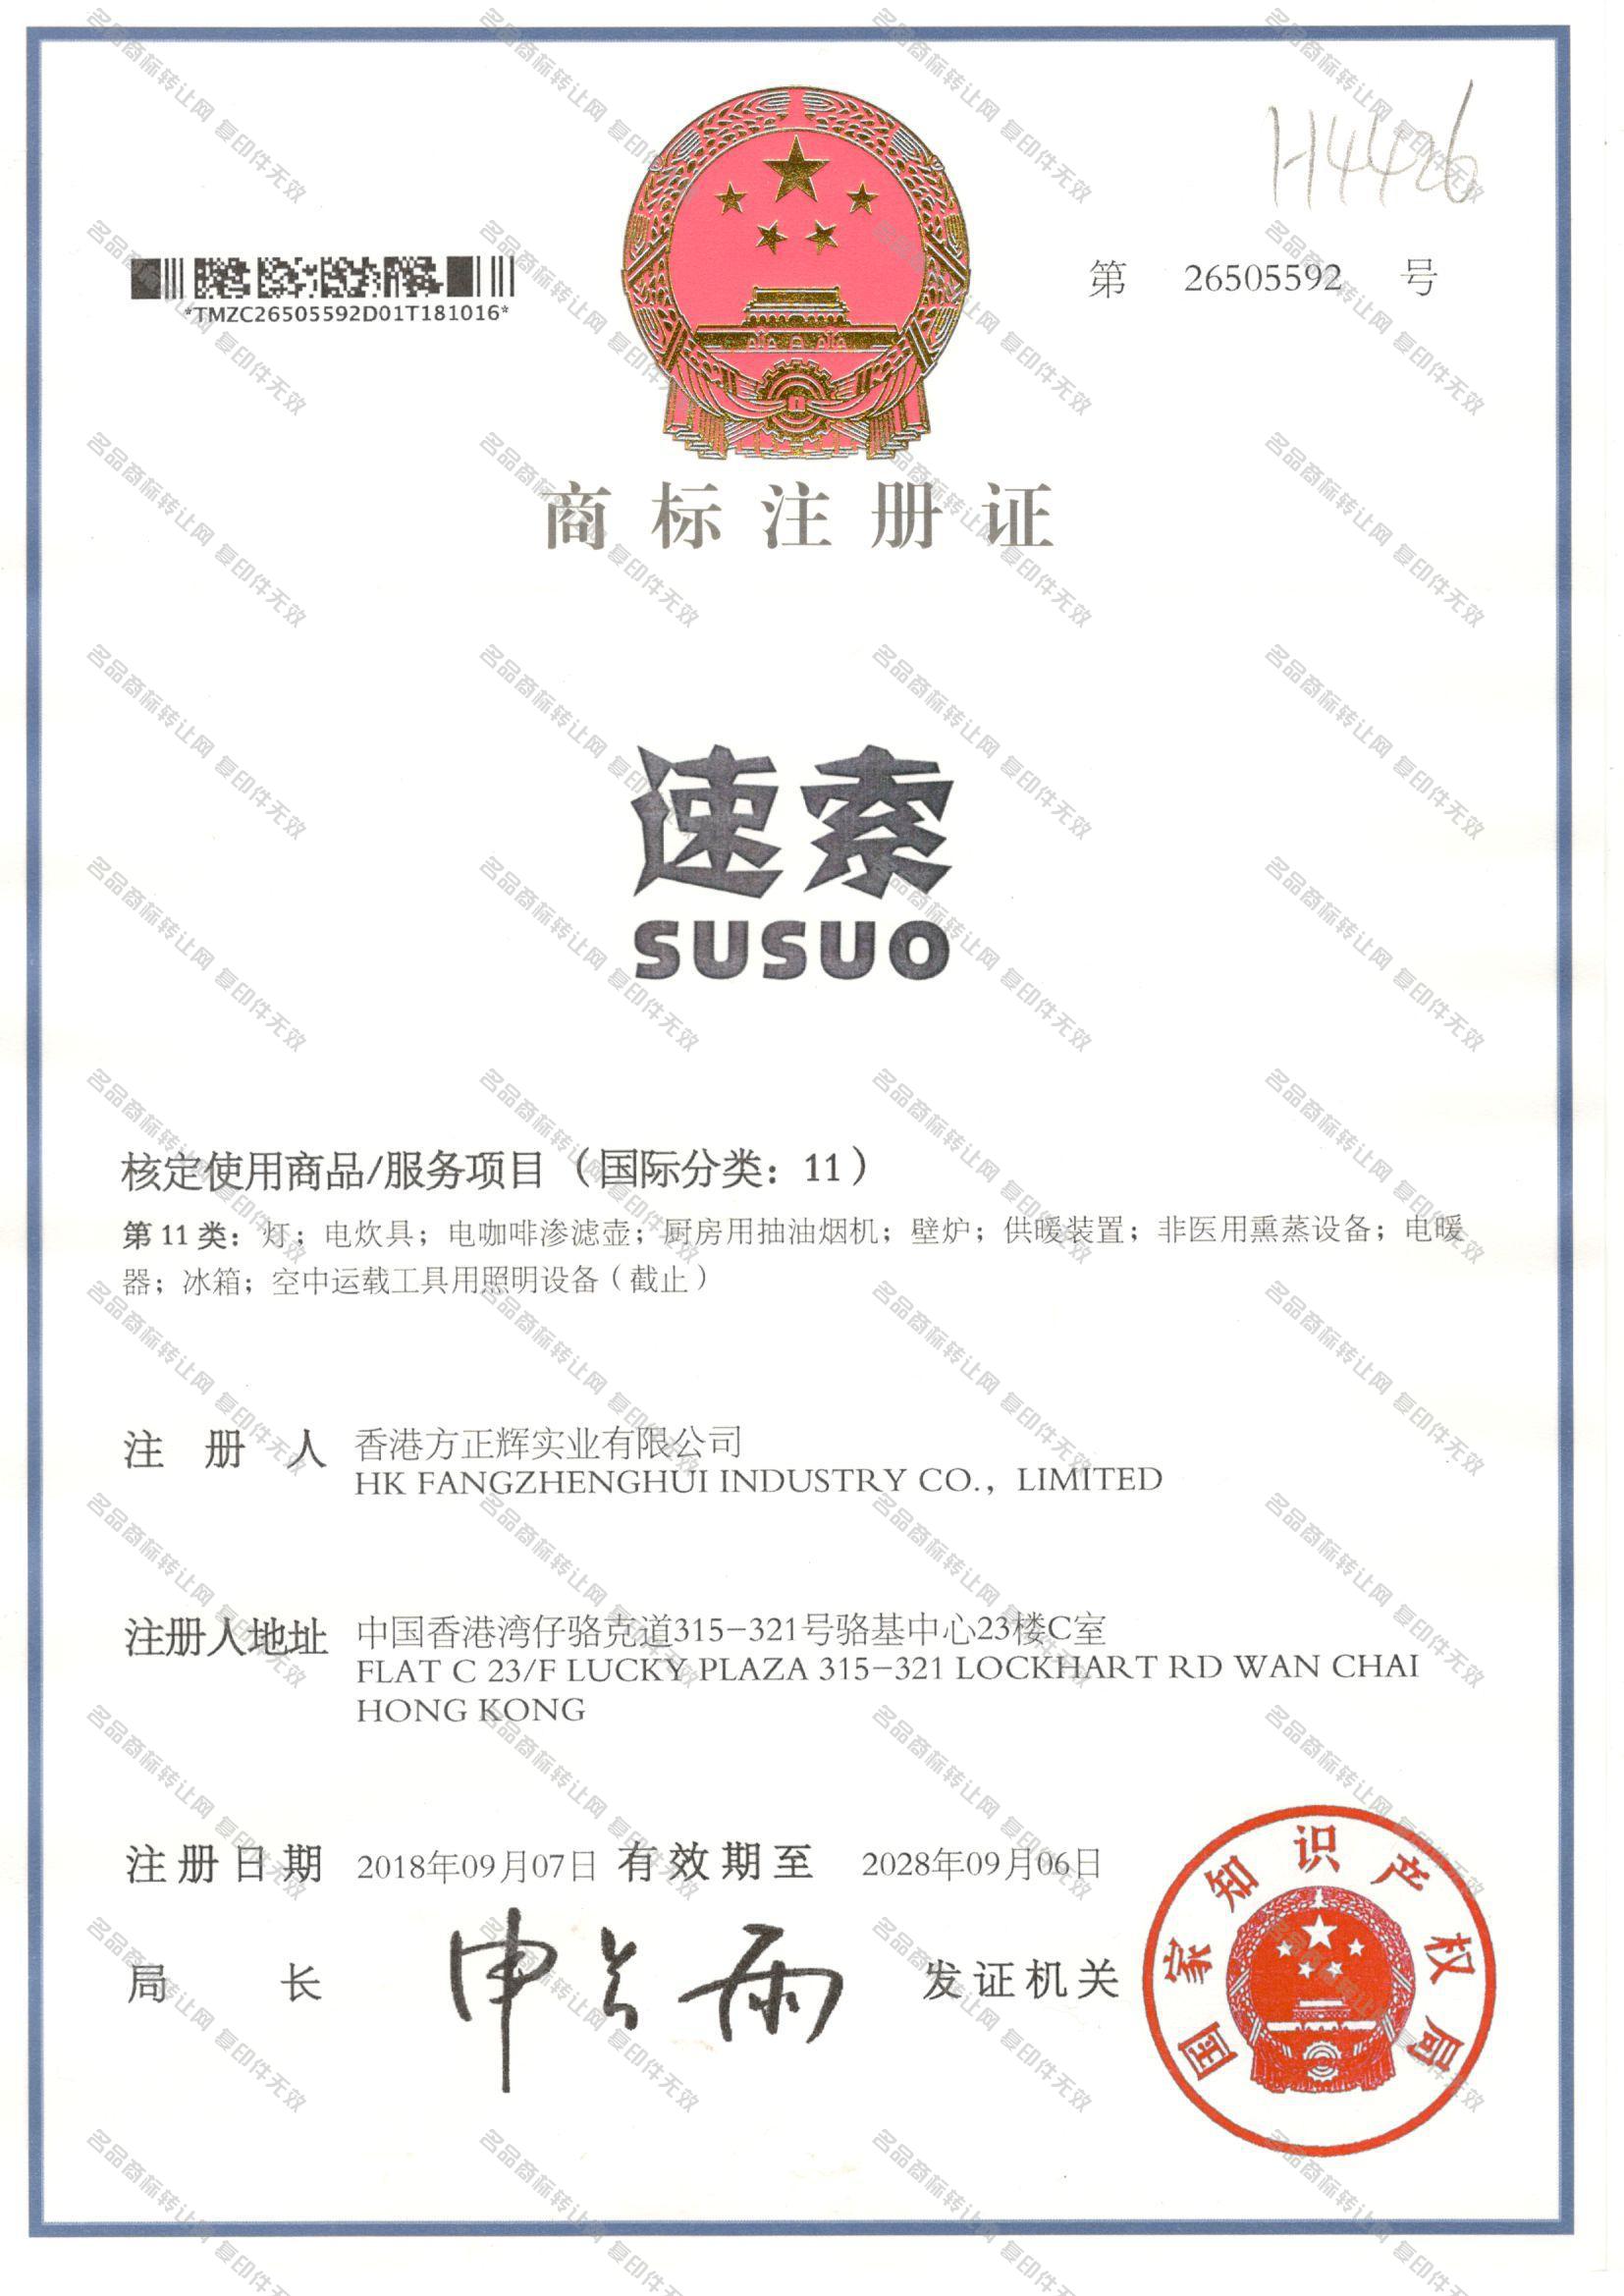 速索 SUSUO注册证